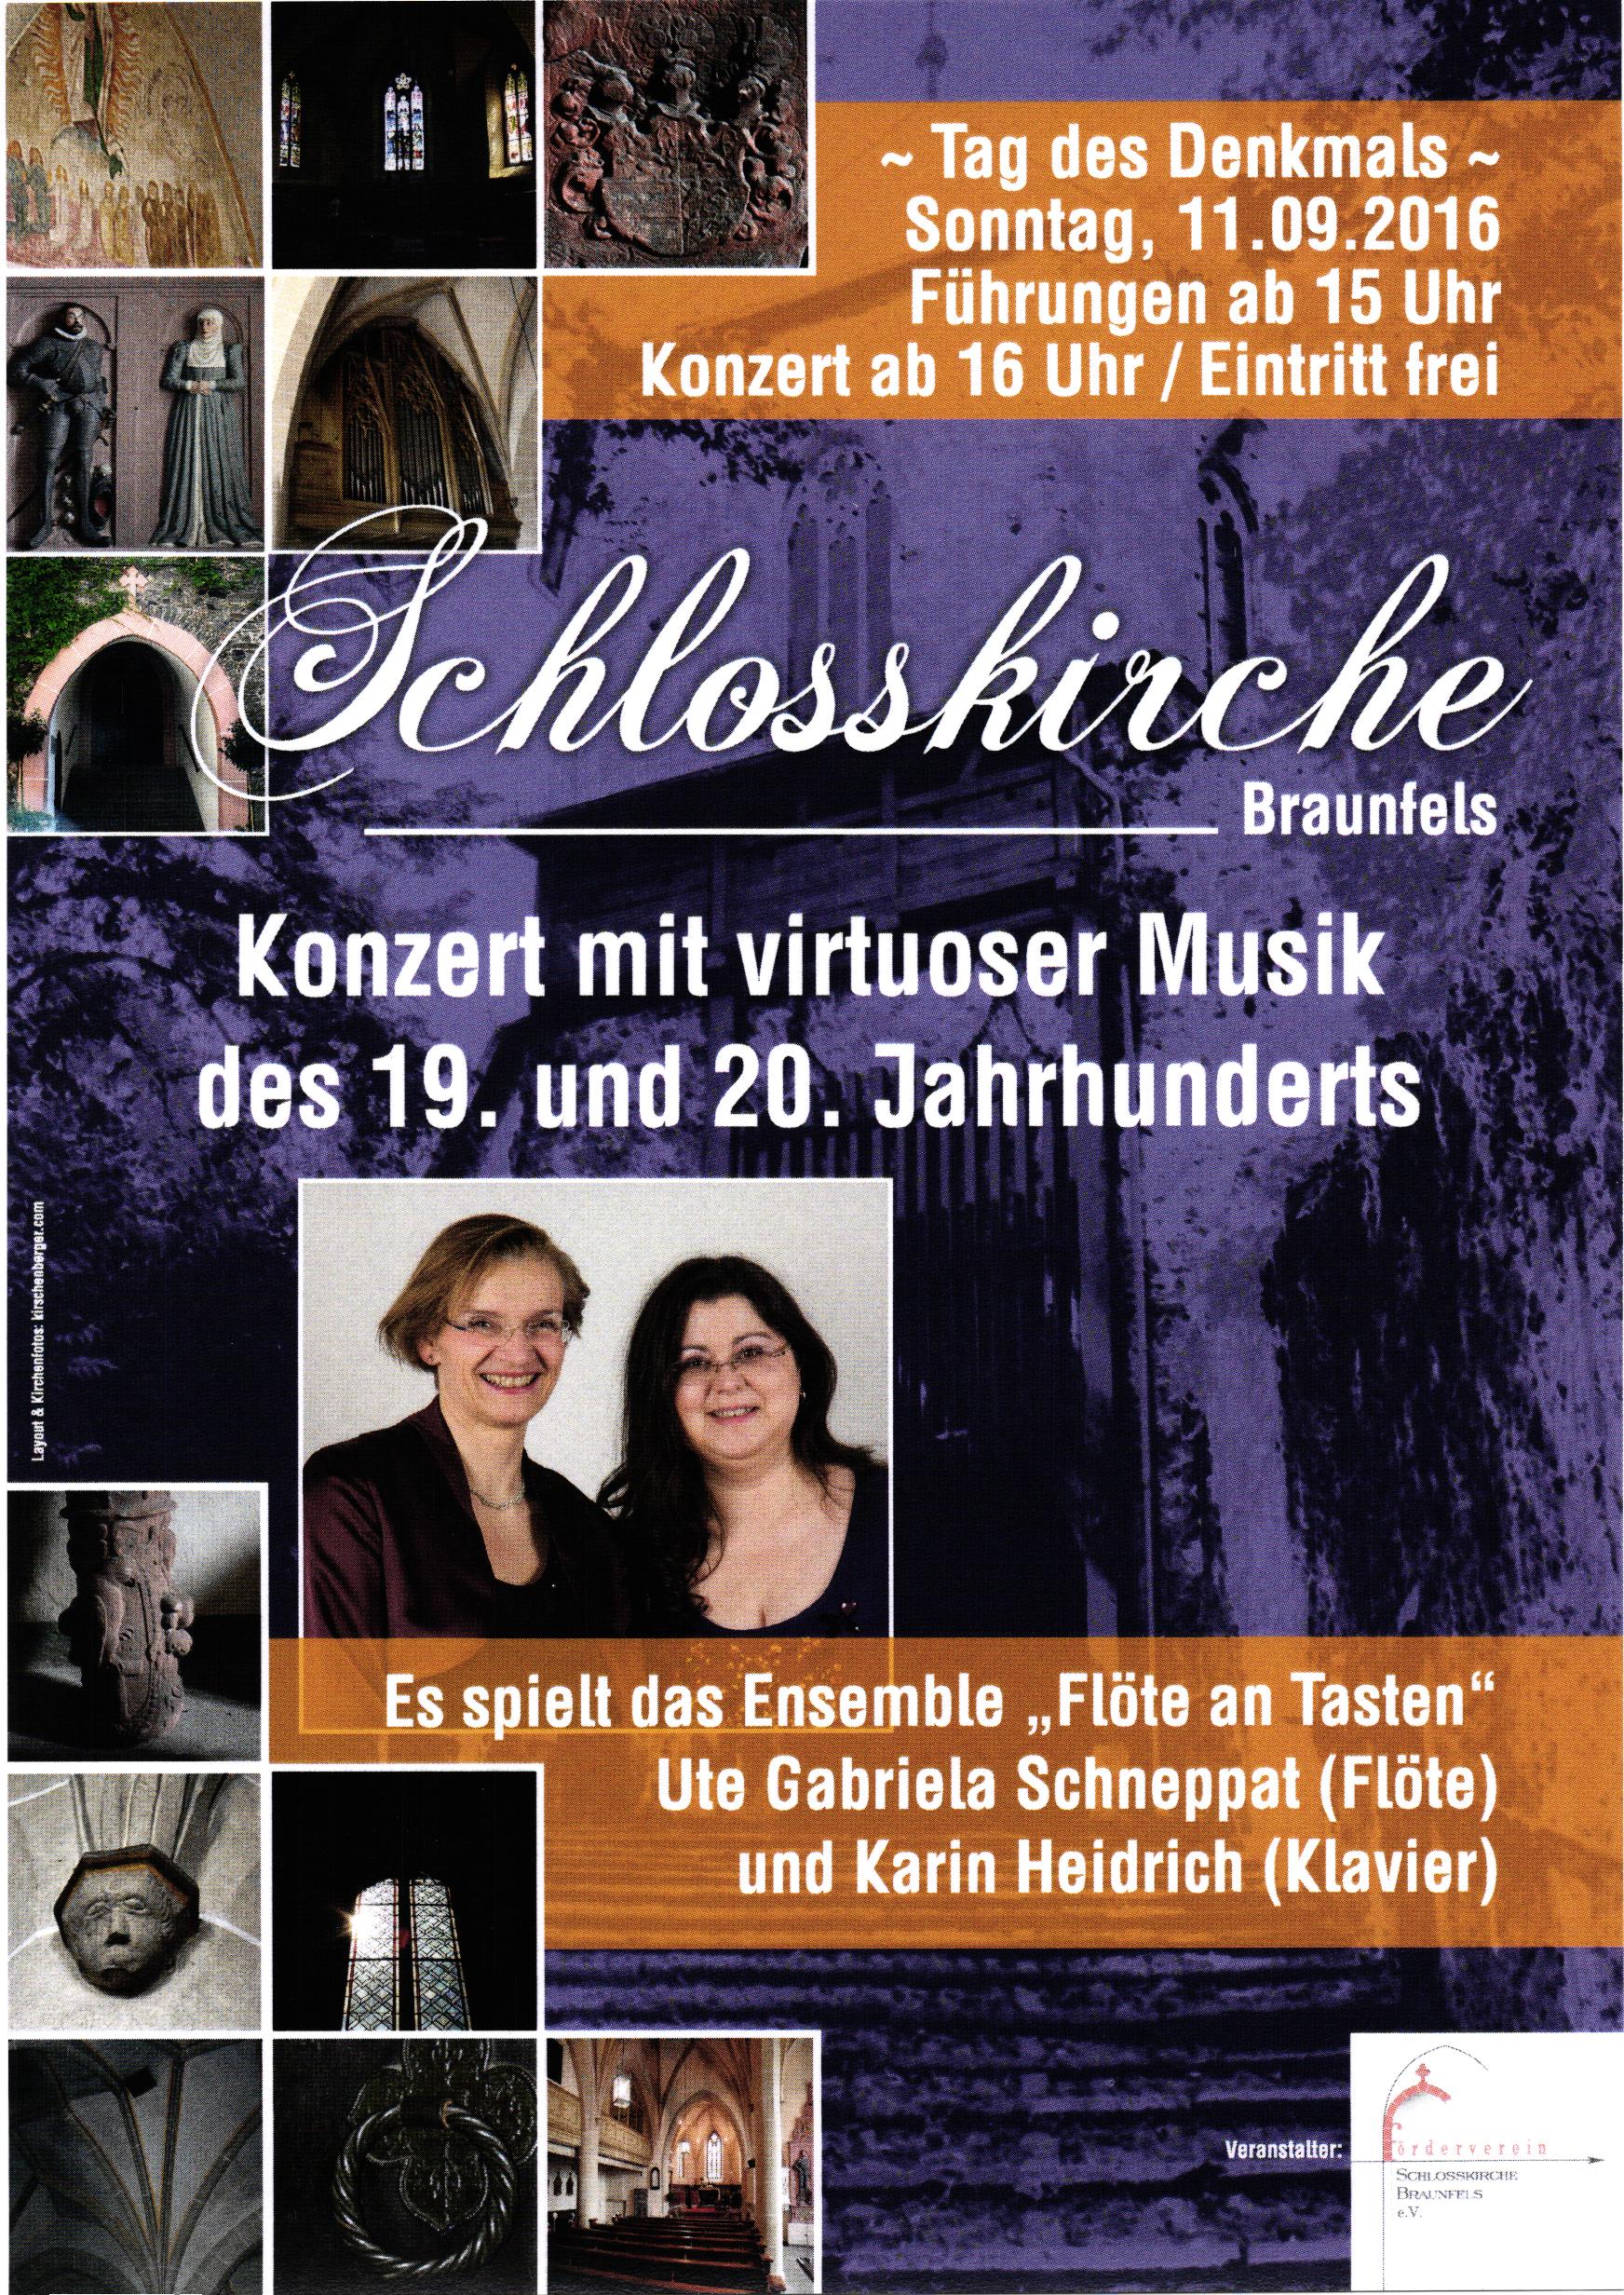 Konzert mit virtuoser Musik des 19. und 20. Jahrhunderts